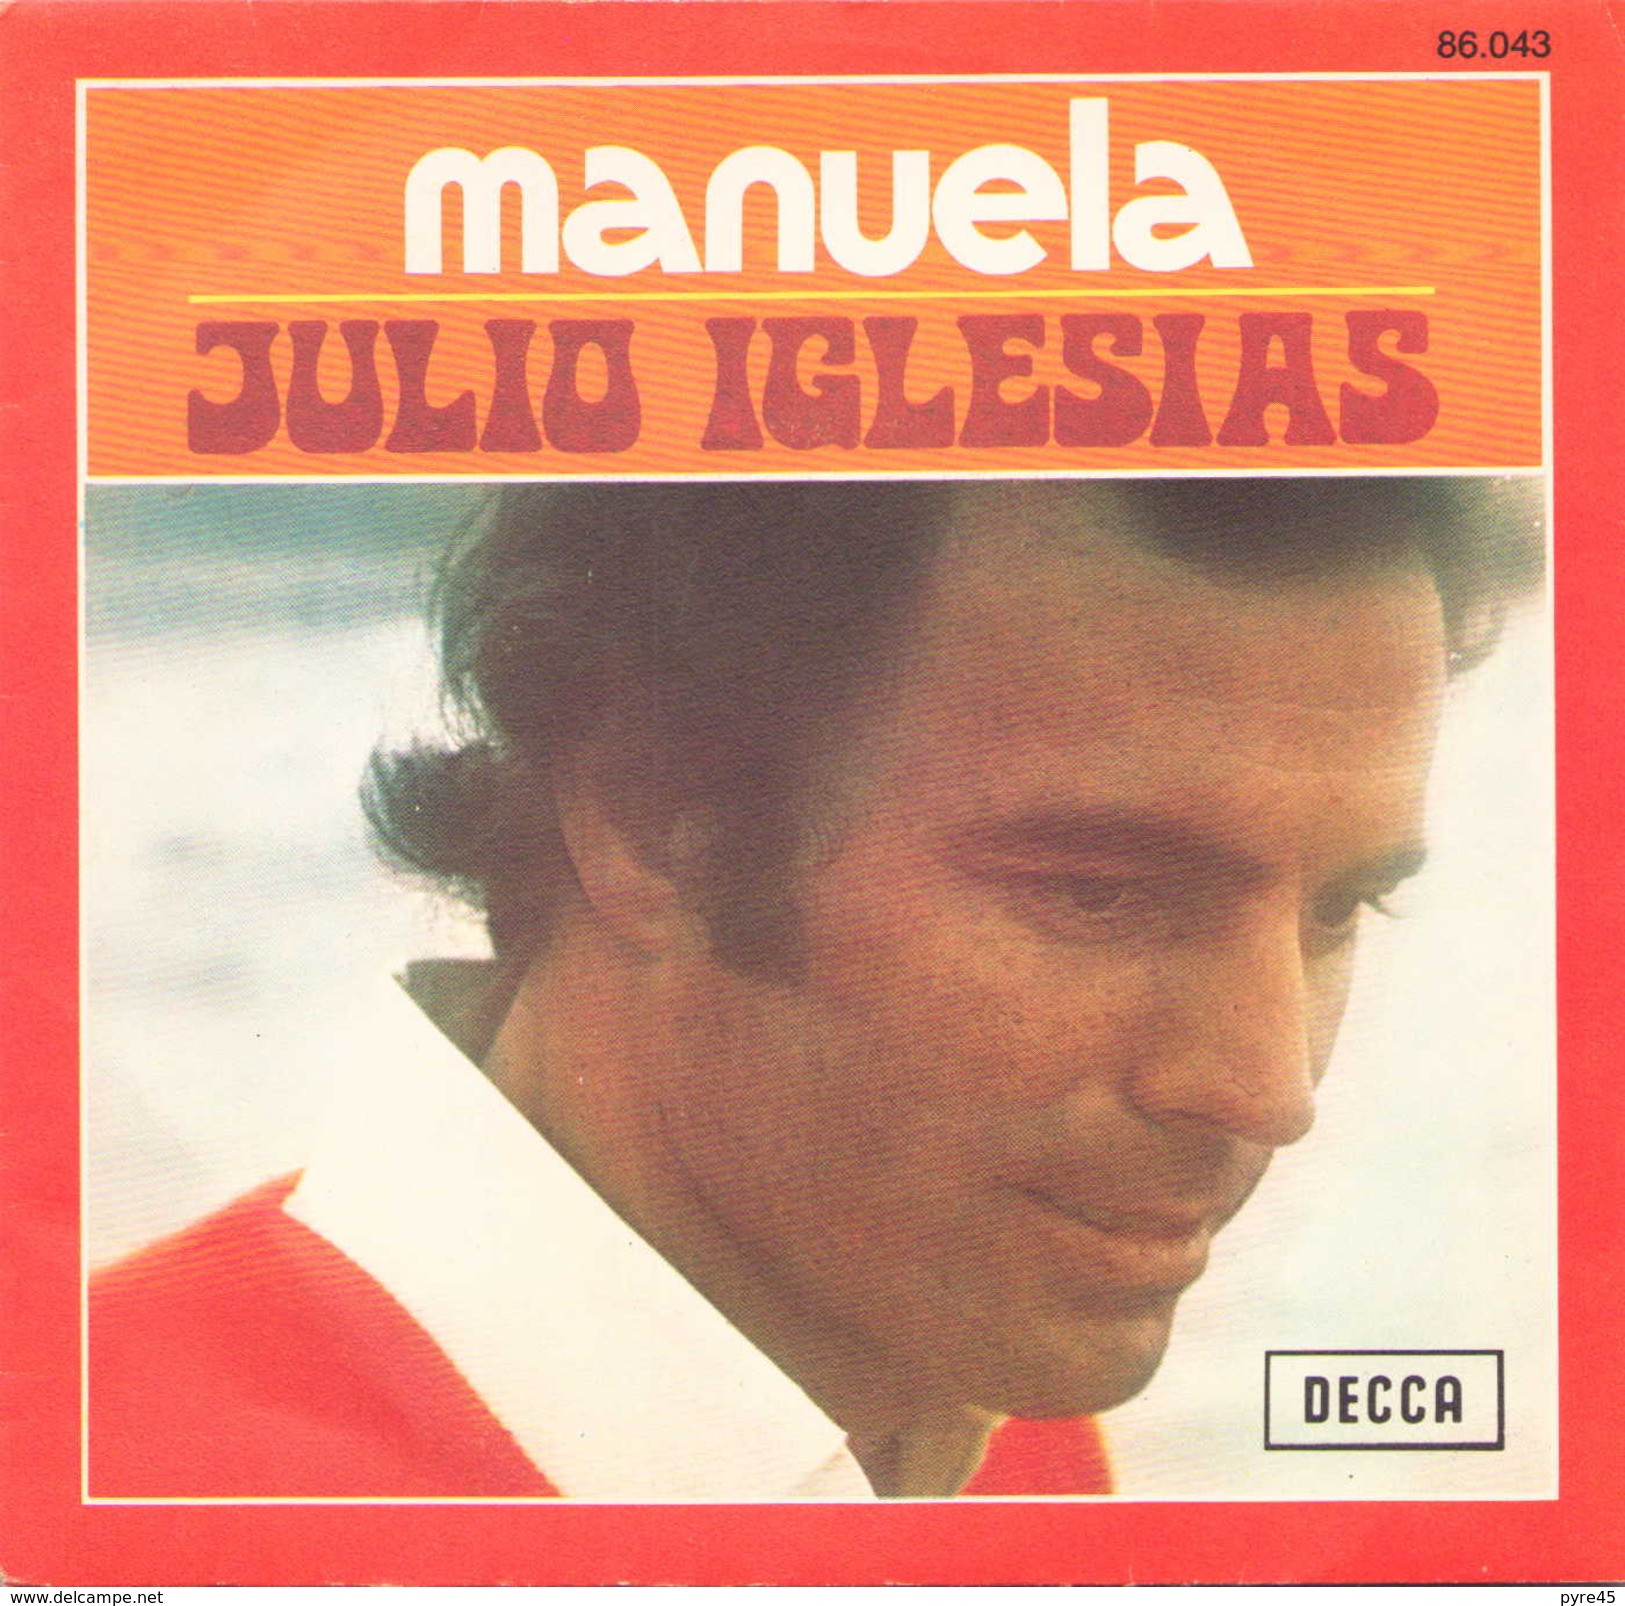 45 TOURS JULIO IGLESIAS DECCA 86043 MANUELA / DICEN - Autres - Musique Espagnole